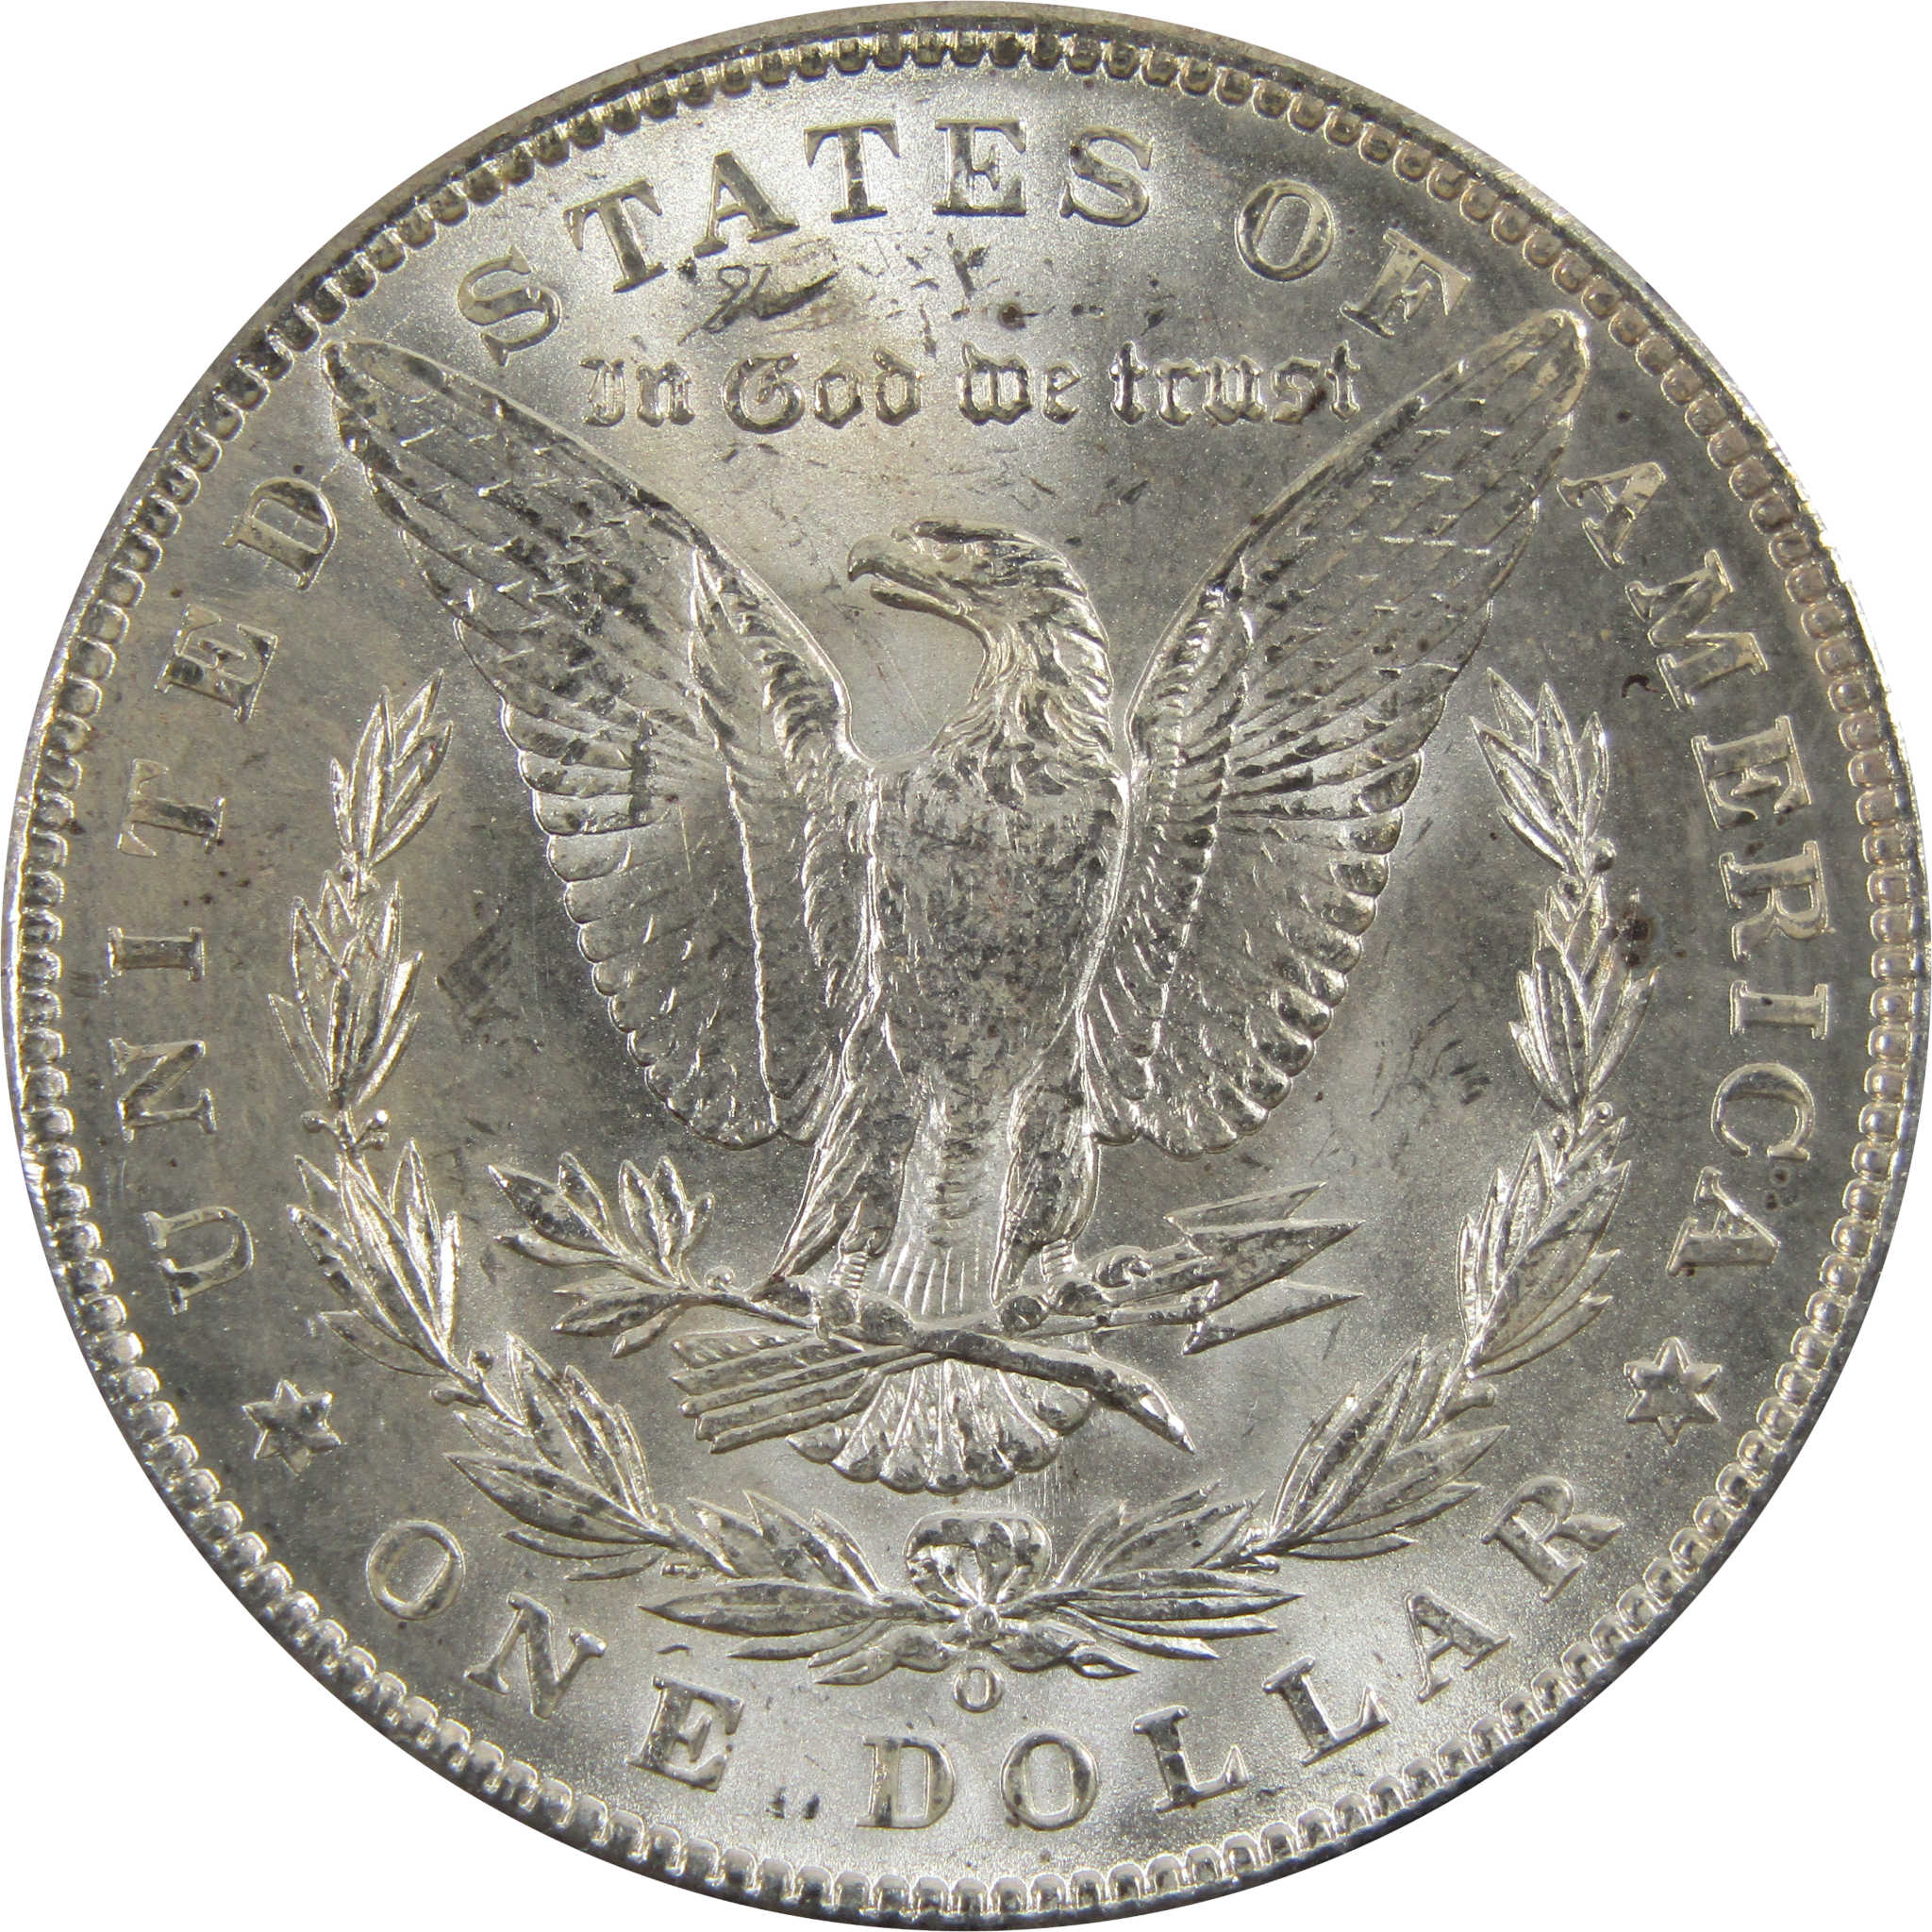 1898 O Morgan Dollar BU Uncirculated 90% Silver $1 Coin SKU:I5252 - Morgan coin - Morgan silver dollar - Morgan silver dollar for sale - Profile Coins &amp; Collectibles